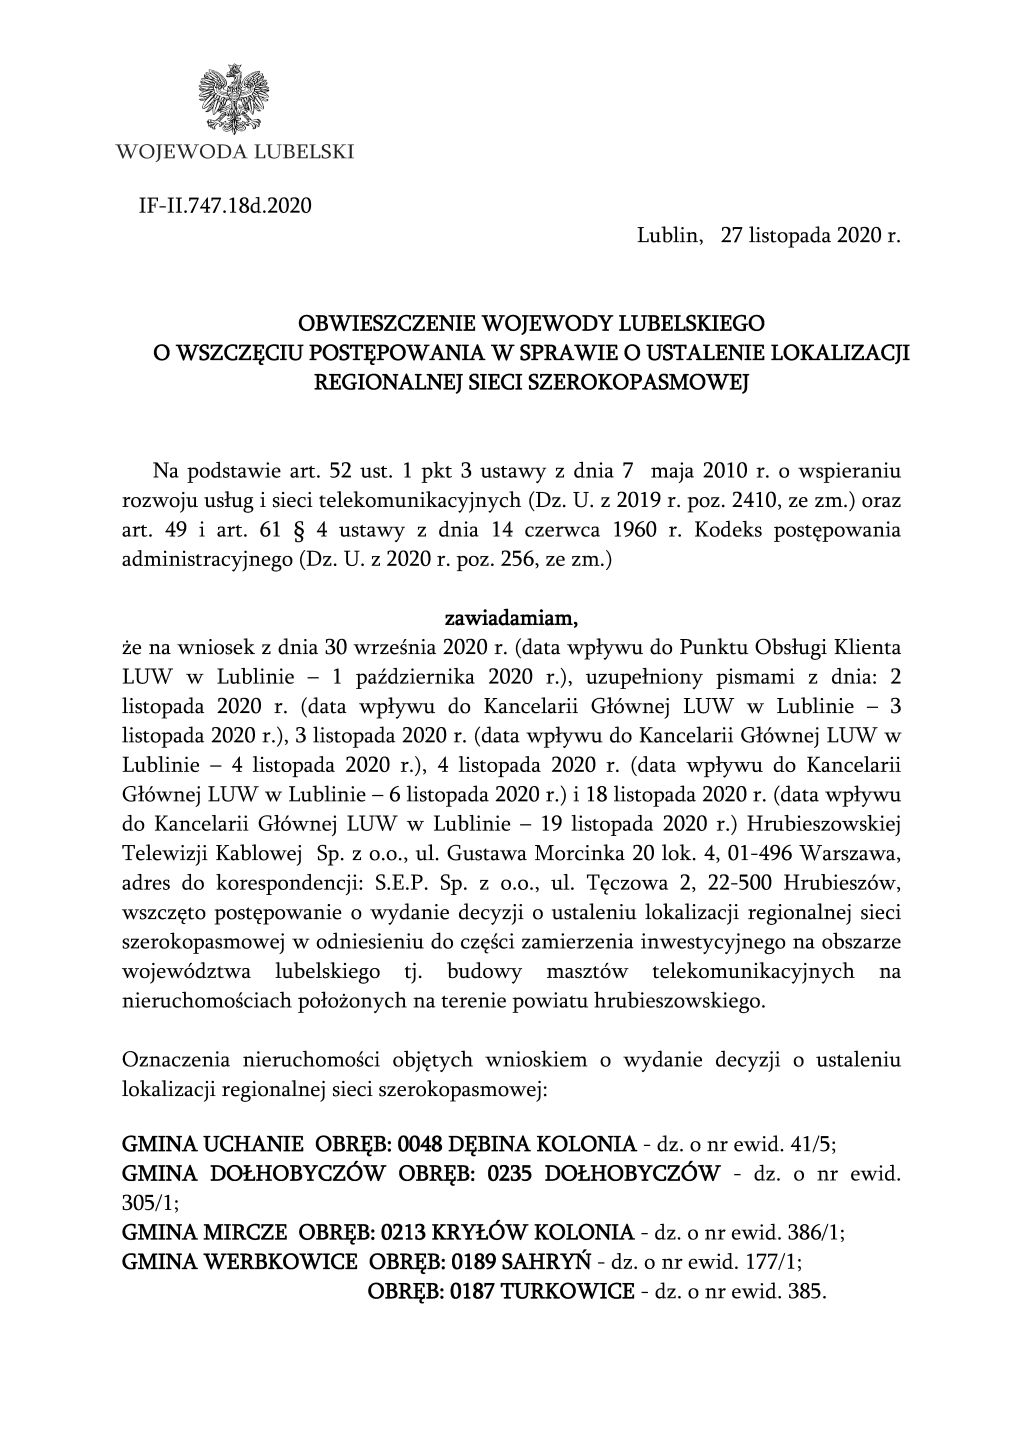 Obwieszczenie Wojewody Lubelskiego o wszczęciu postępowania w sprawie o ustalenie lokalizacji regionalnej sieci szerokopasmowej